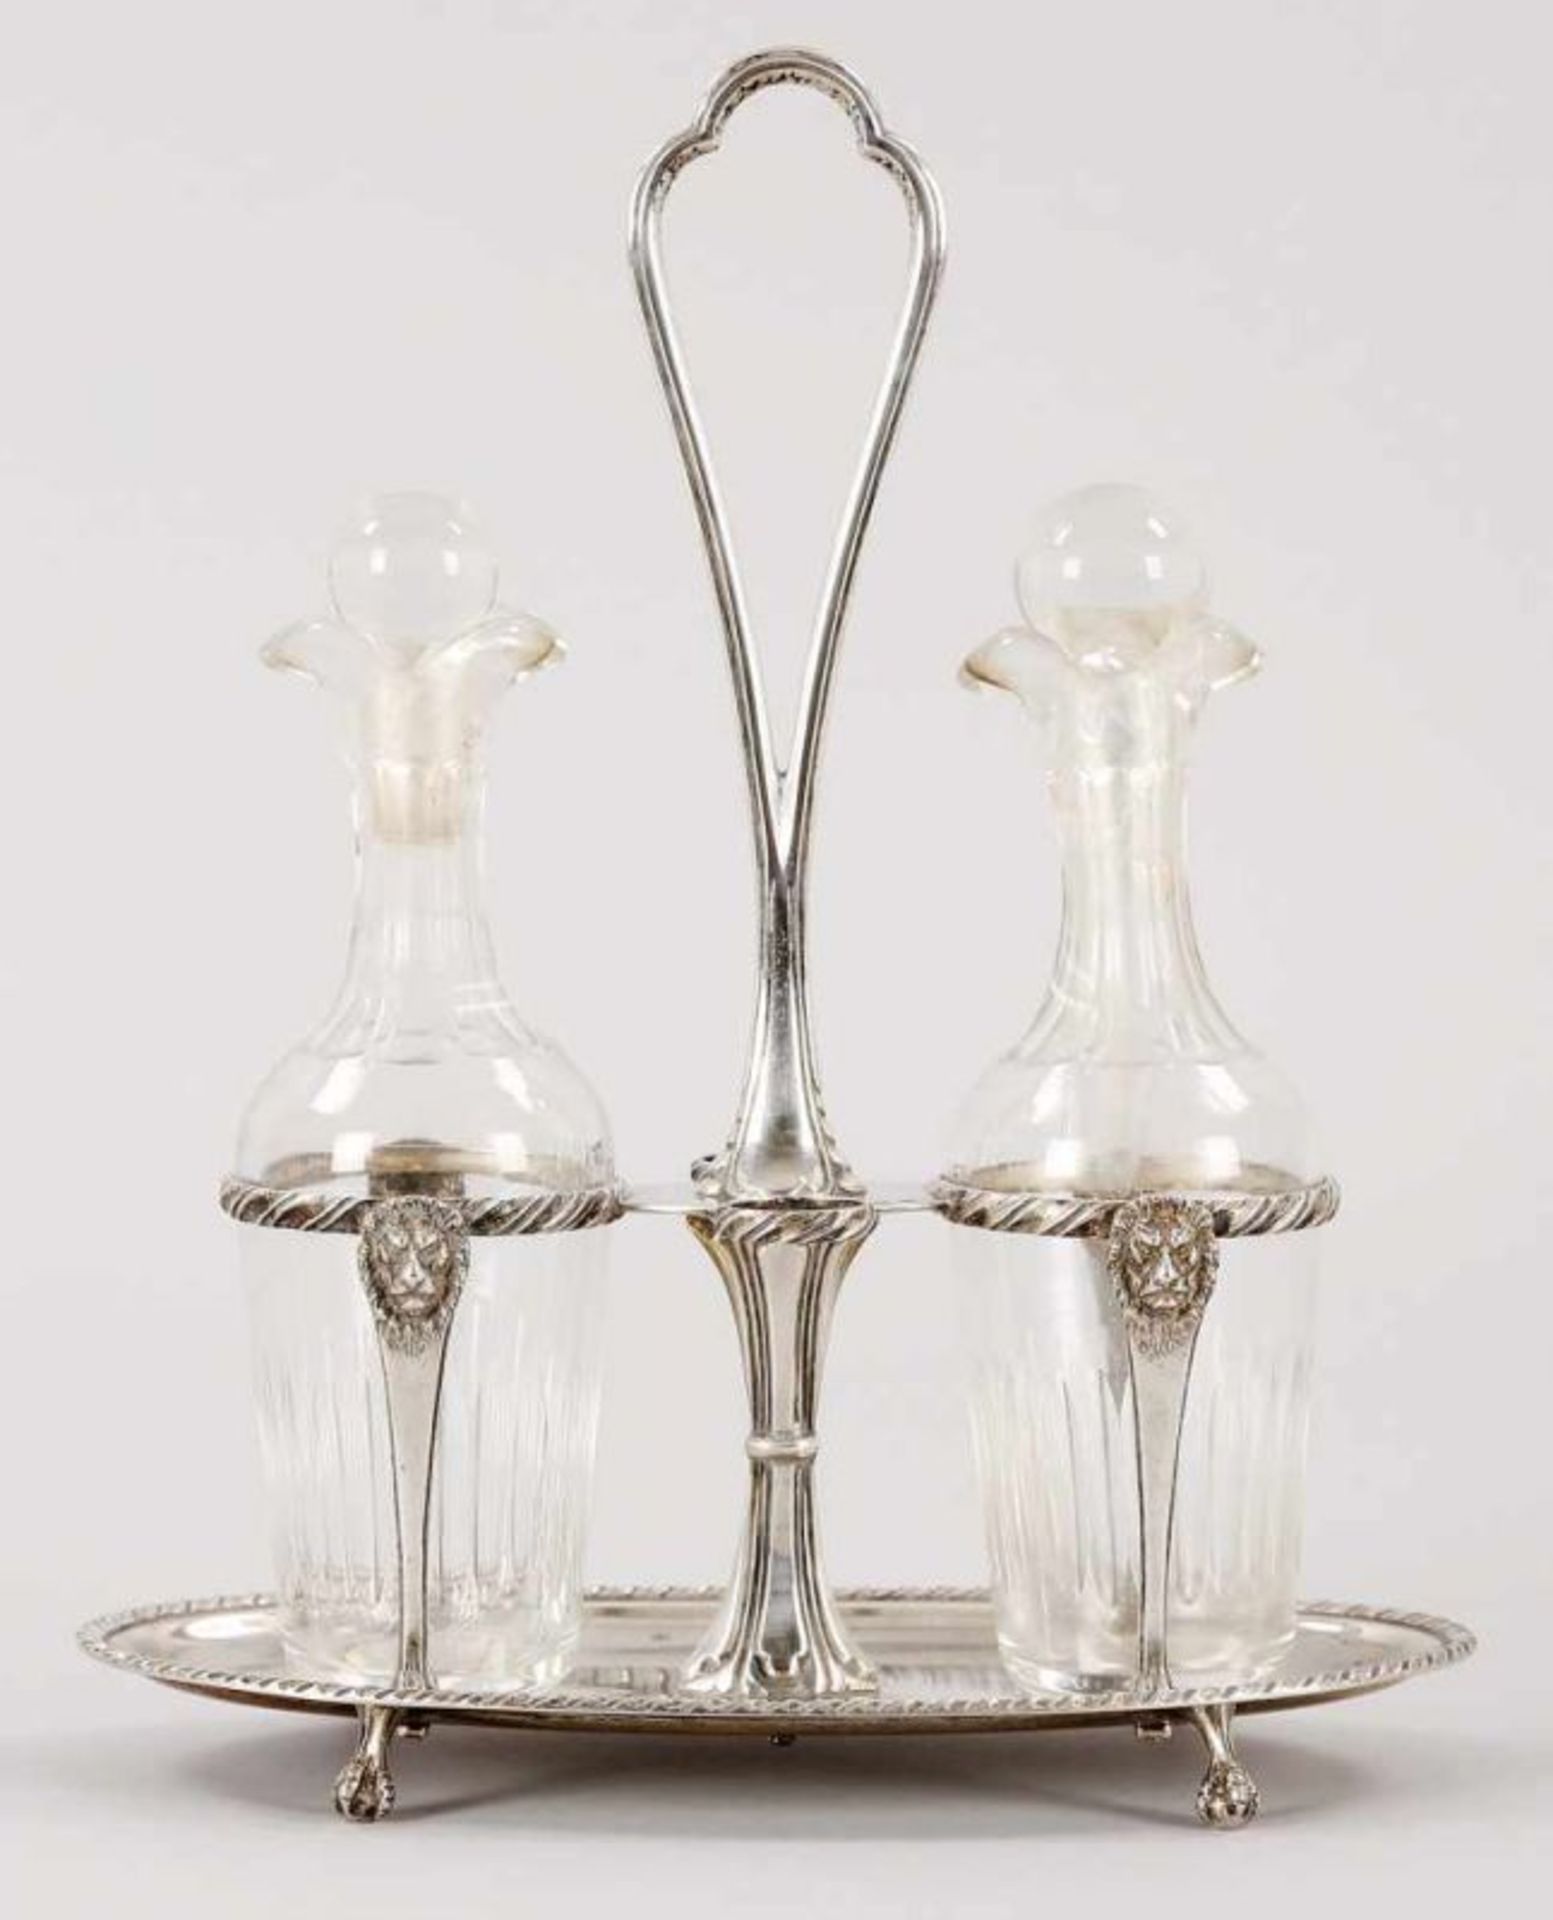 Kl. Empire-Menage 800er Silber/Glas, um 1900/20 Auf 4 Klauenfüßen der ovale Stand m. hoher,